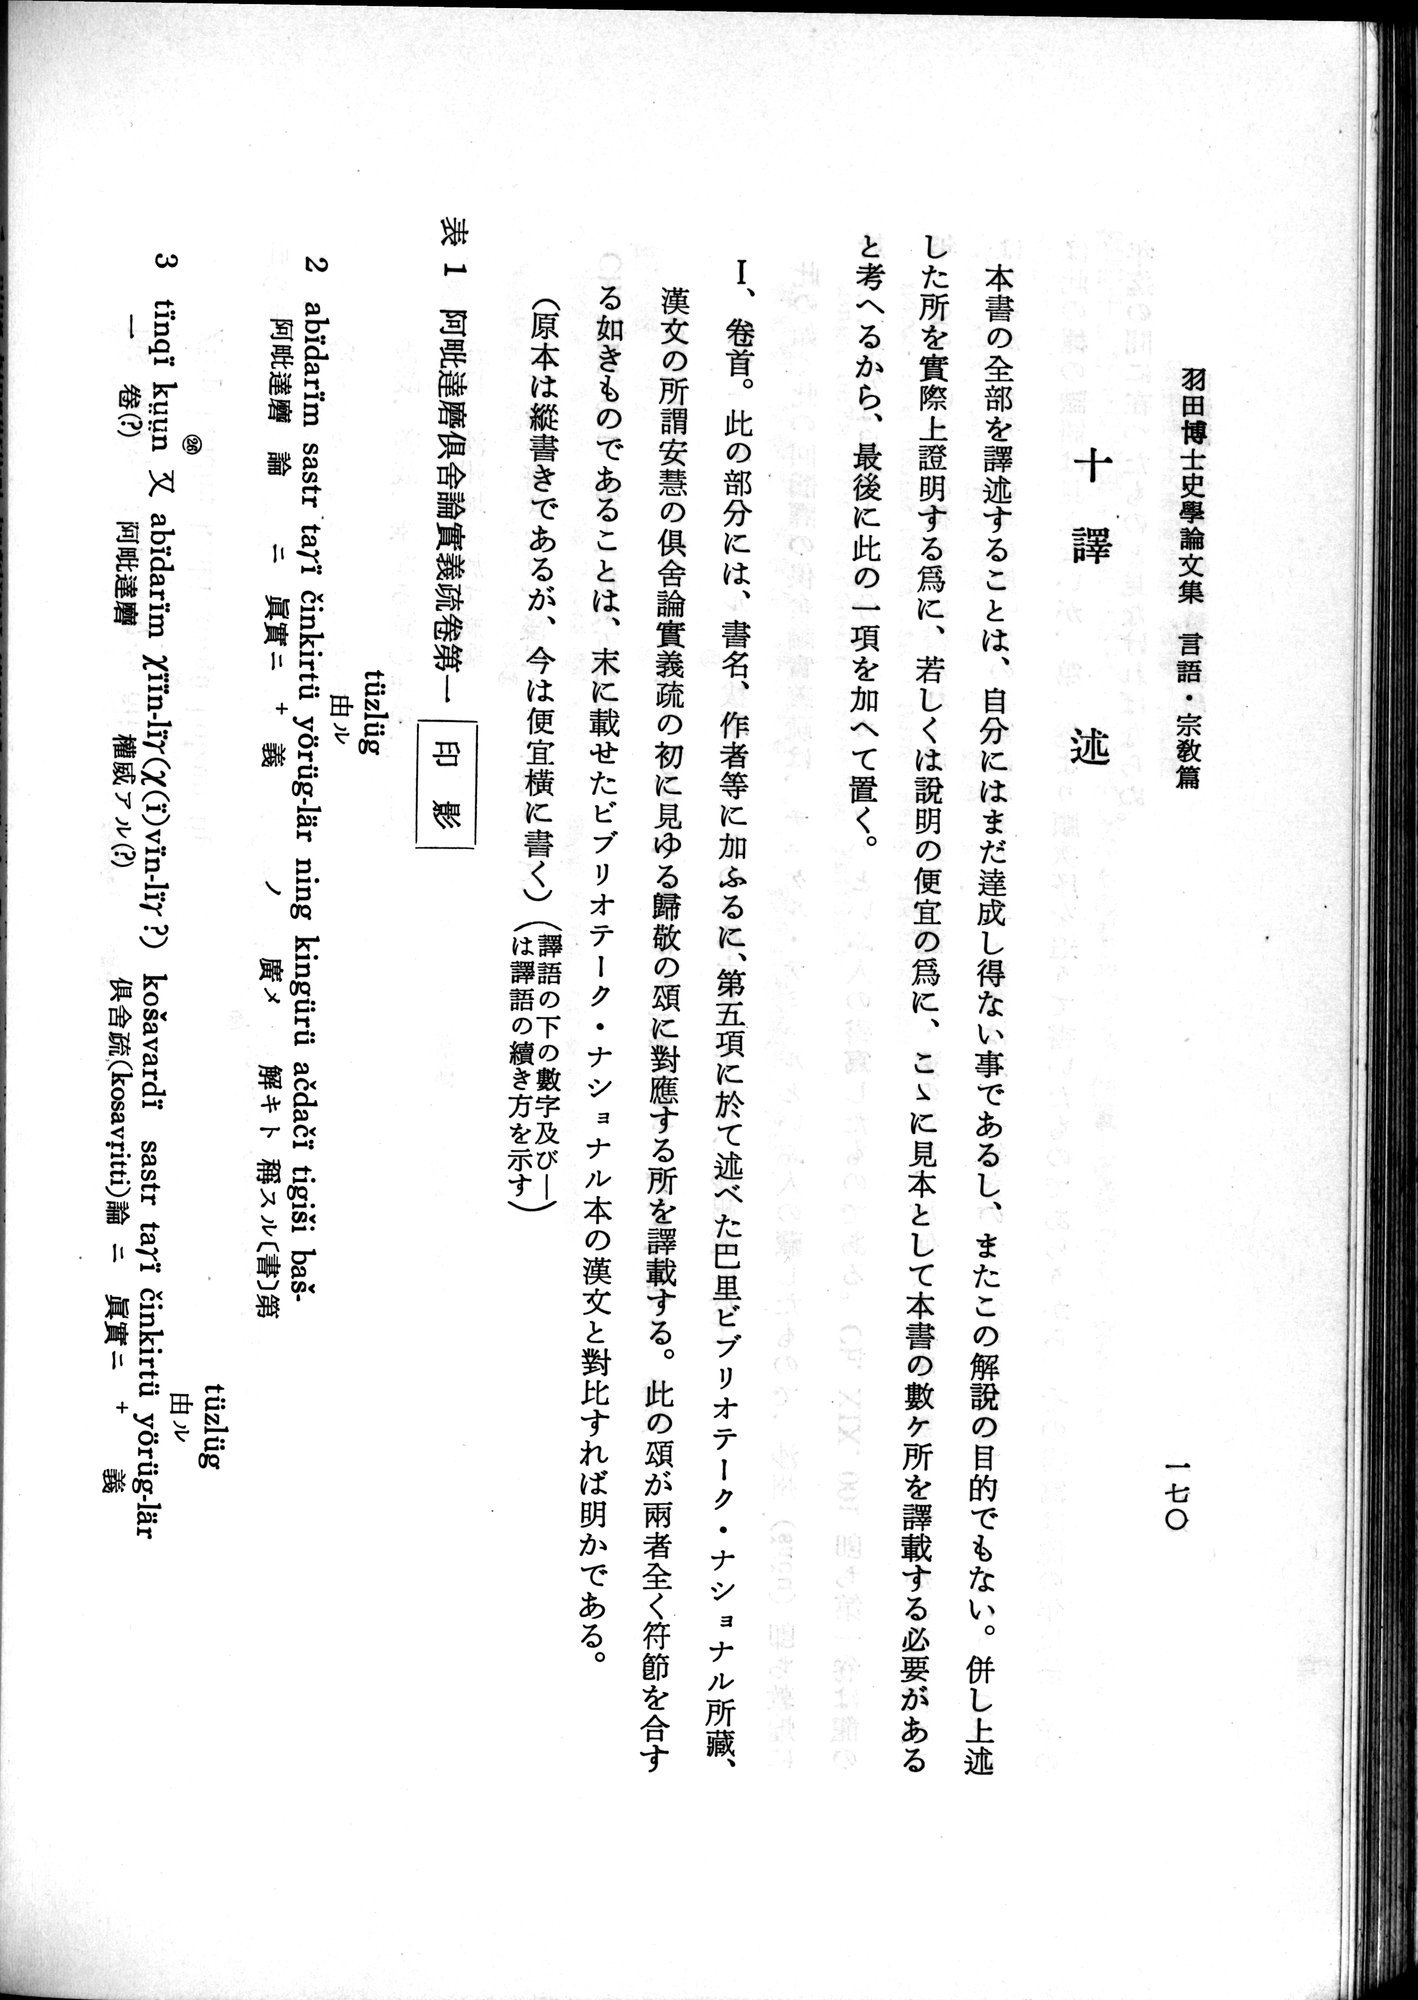 羽田博士史学論文集 : vol.2 / Page 232 (Grayscale High Resolution Image)